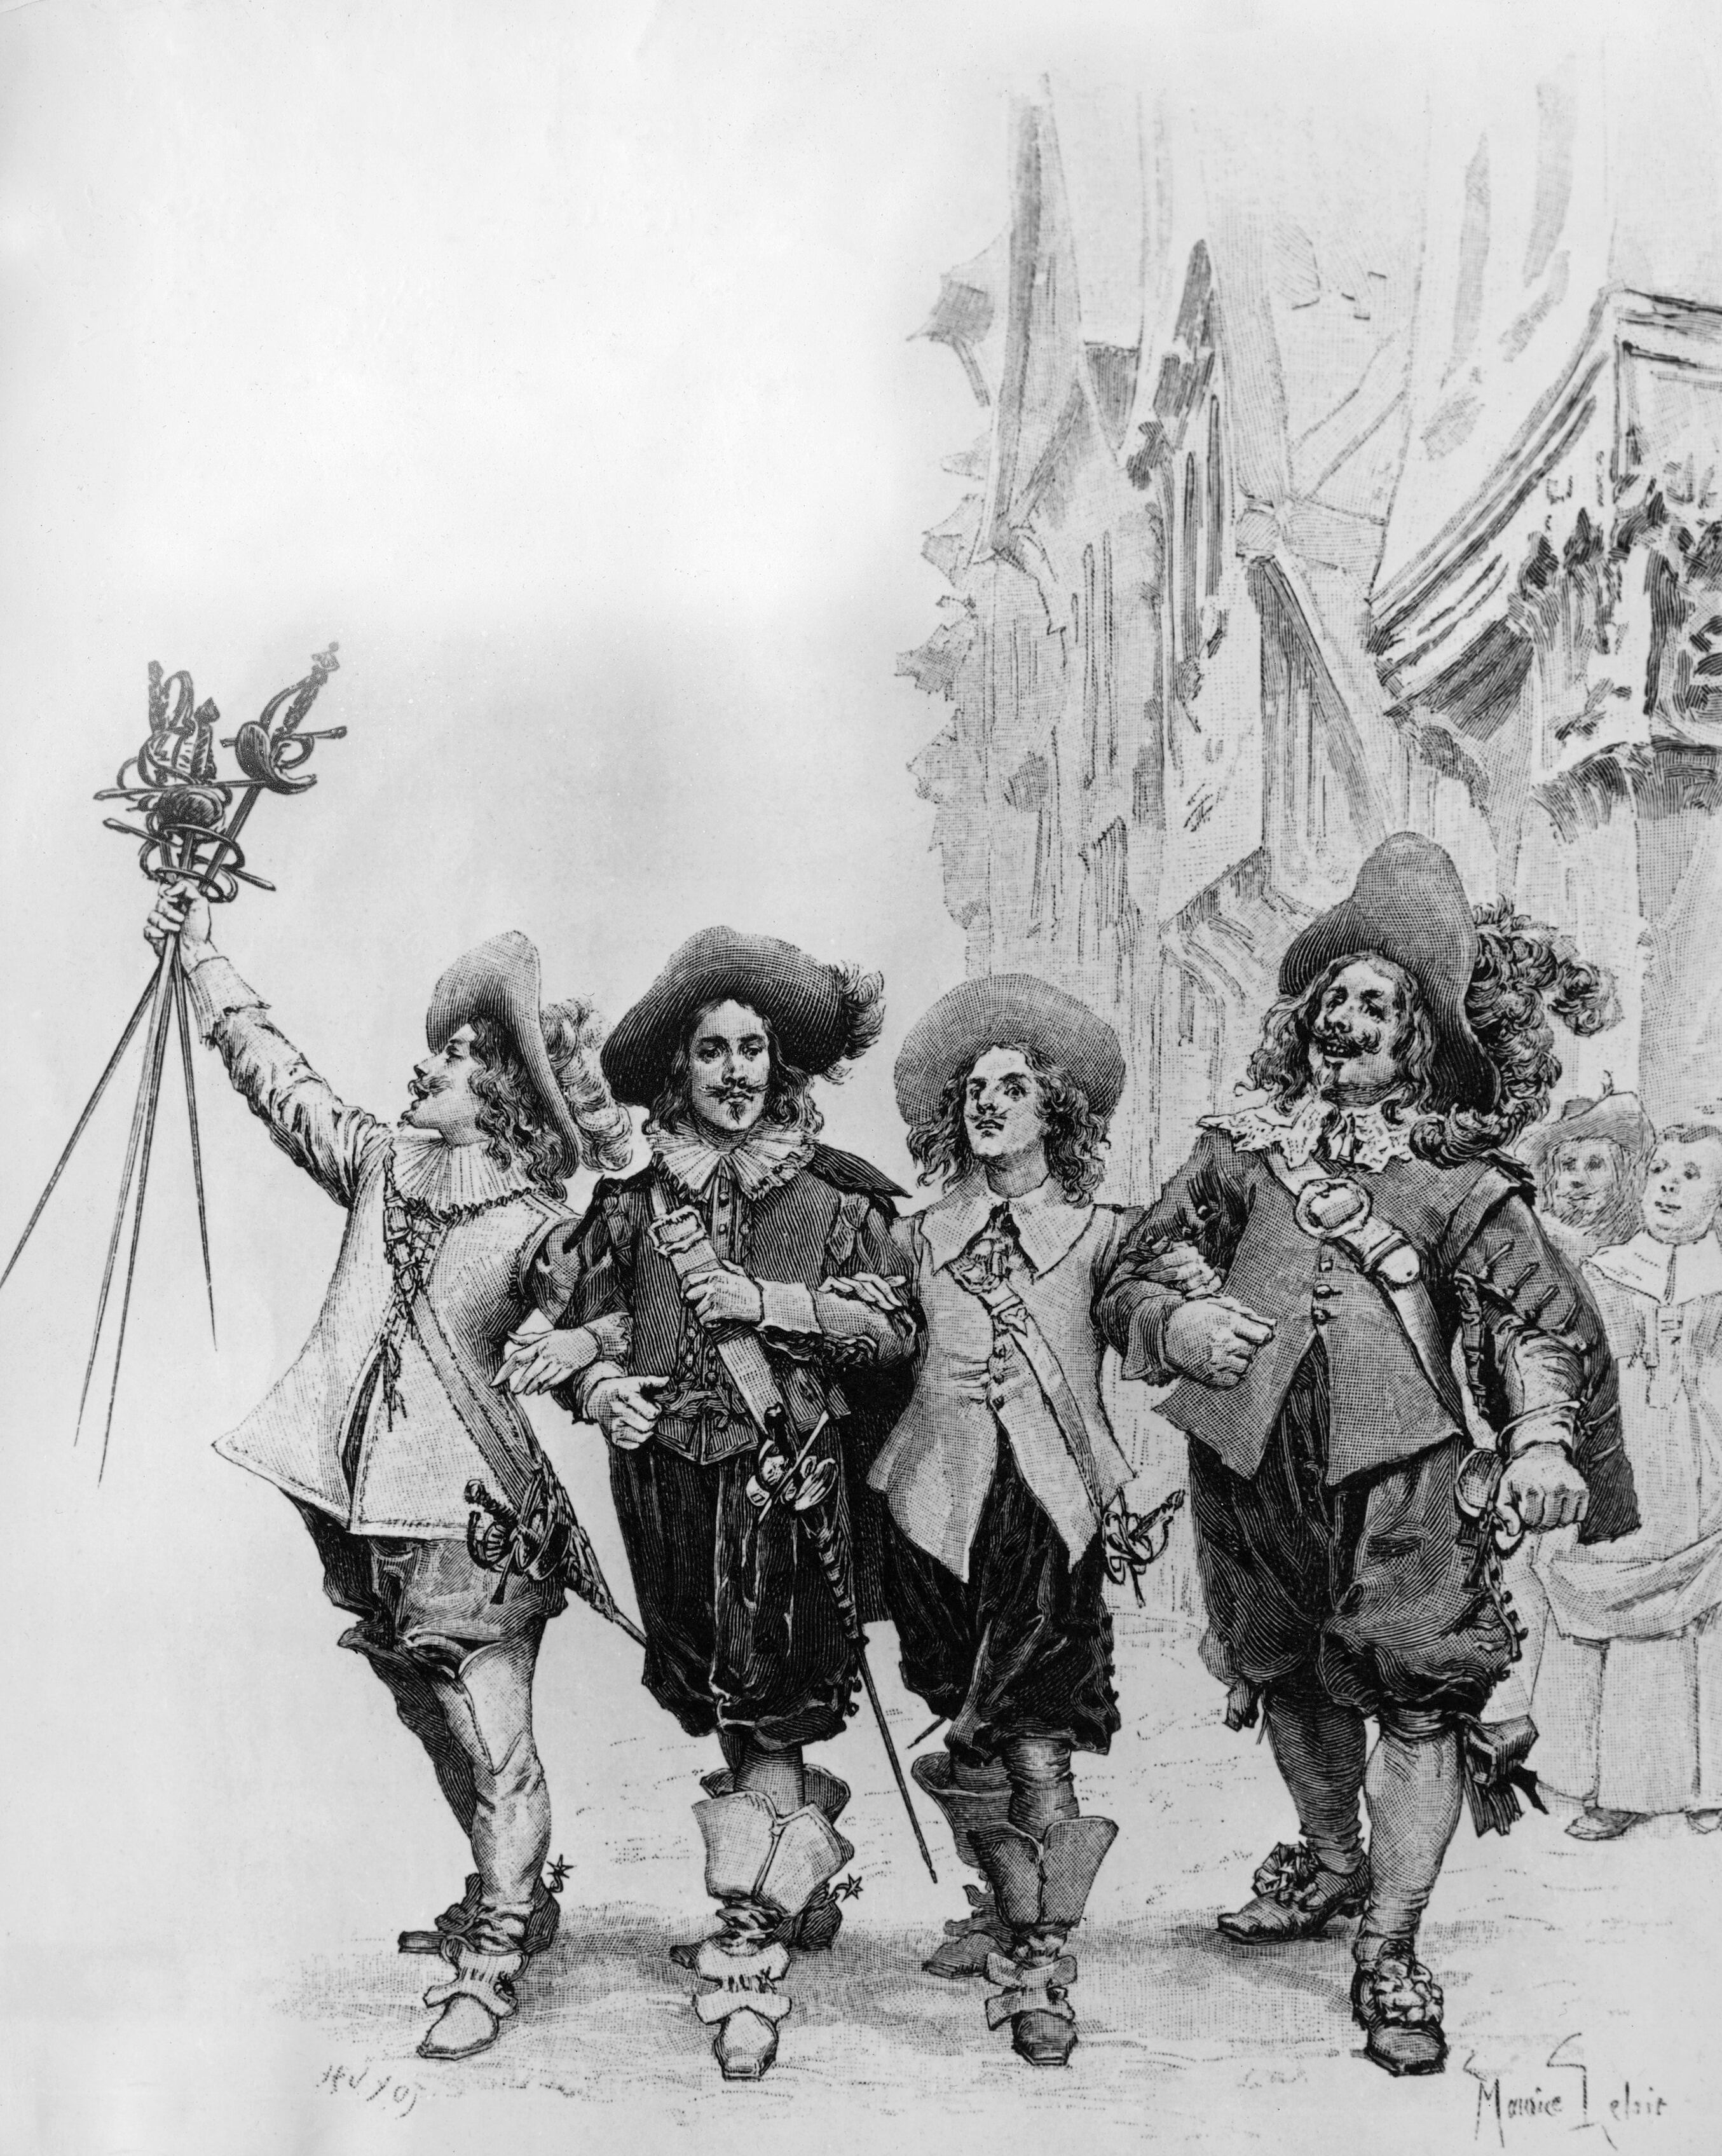 Athos, Porthos, Aramis ayynd D'Artagnan retratados en una ilustración.